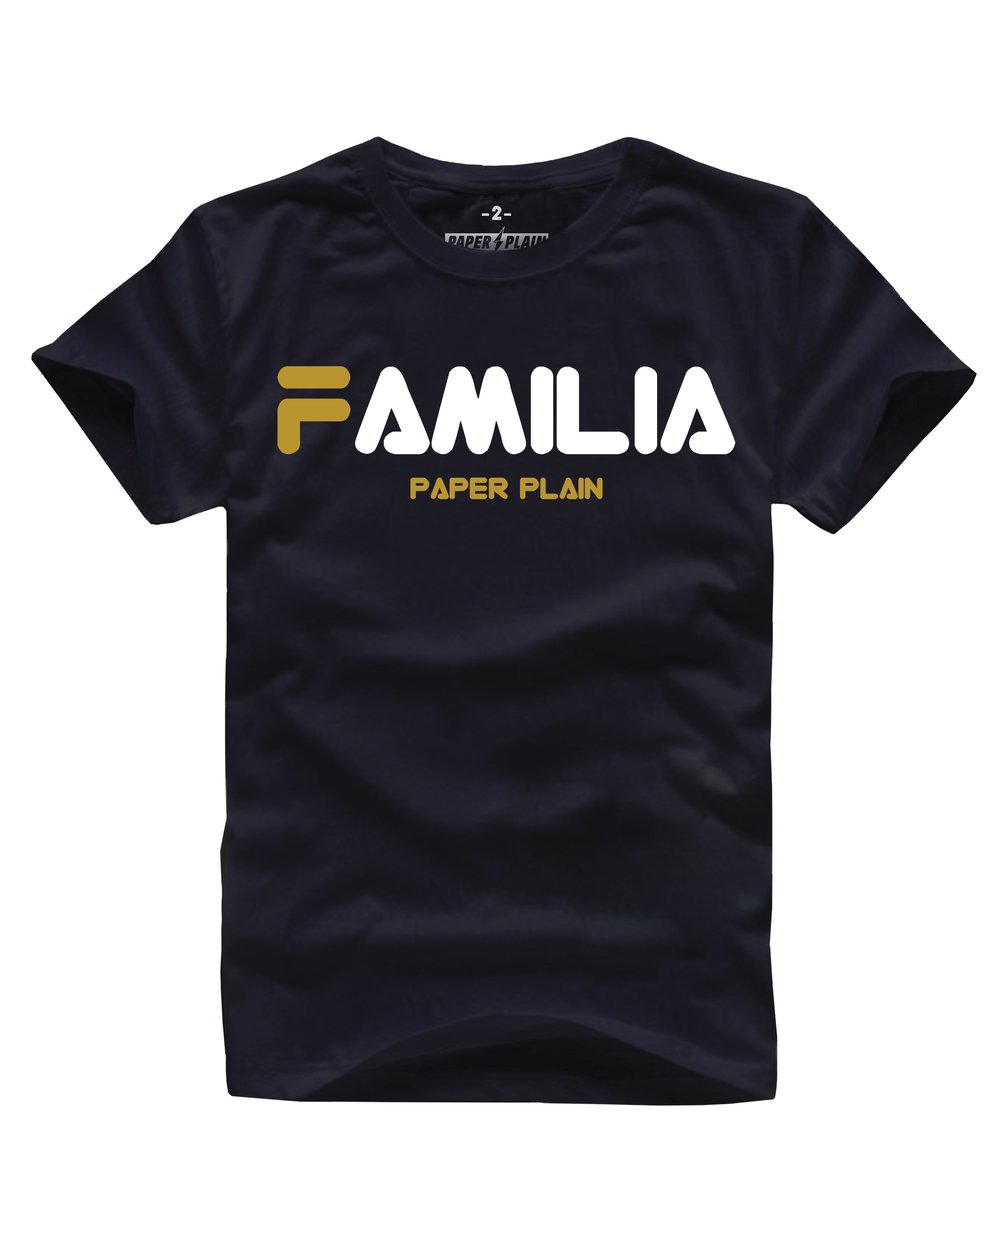 FAMILIA TEE BLACK/GOLD FOIL